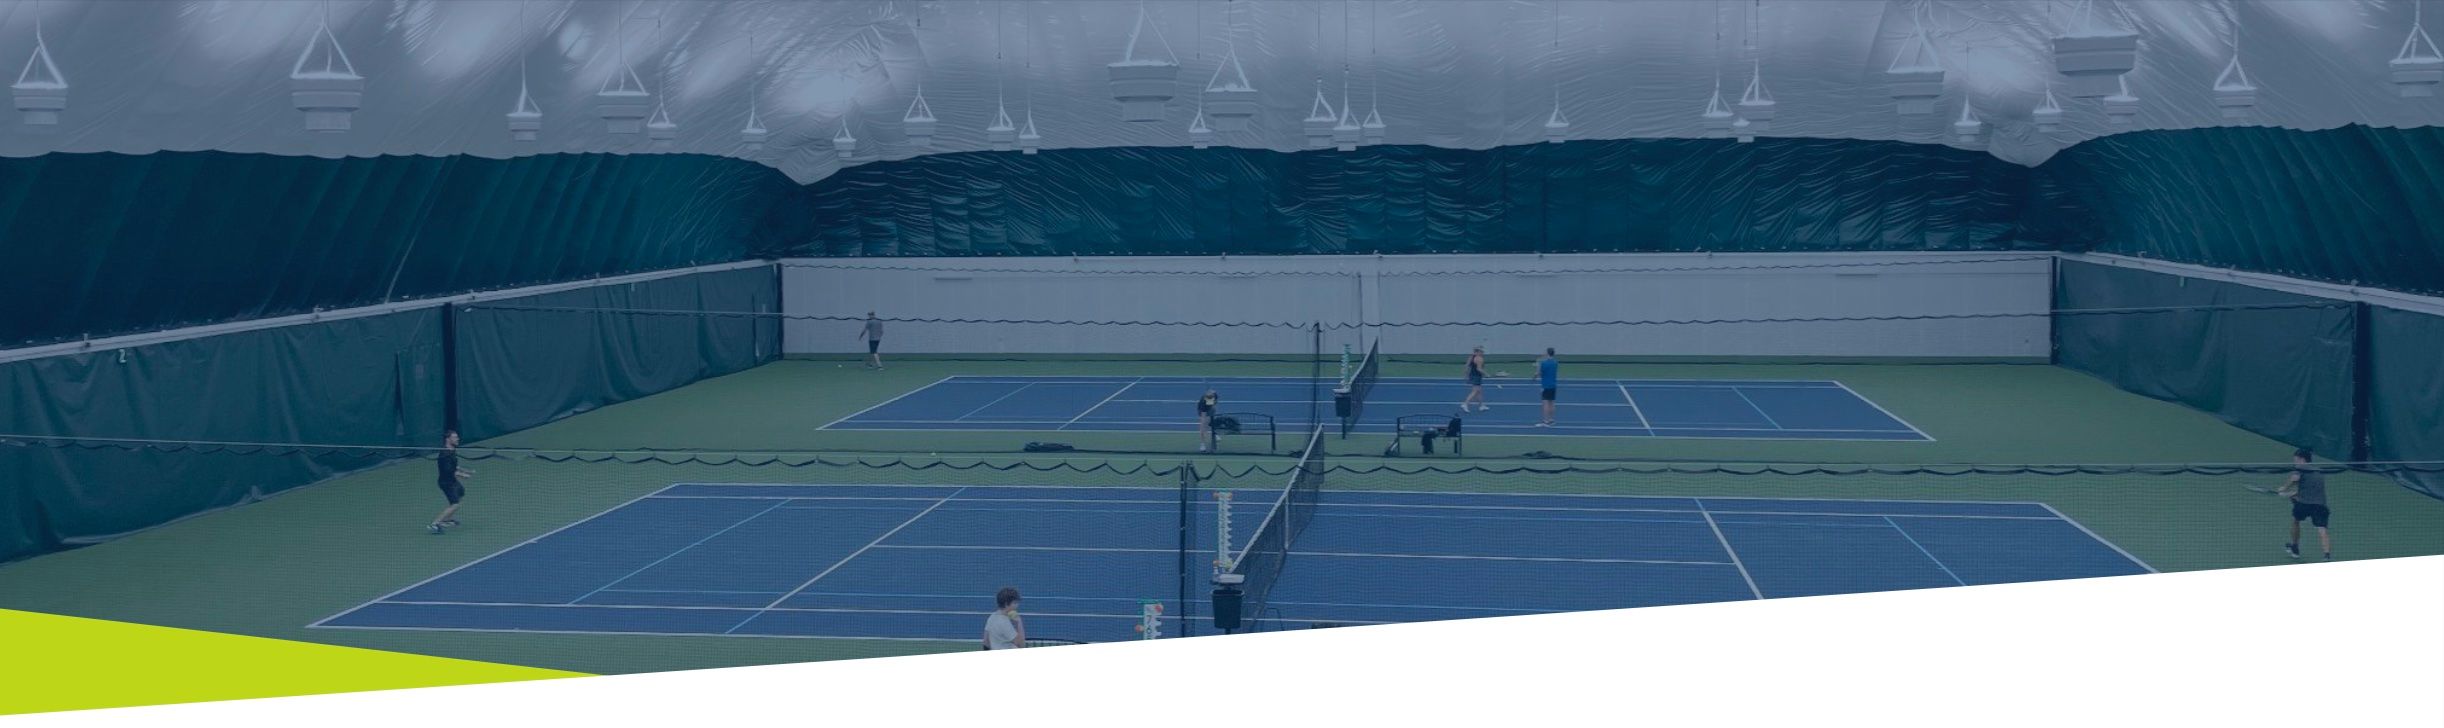 tennis courts.jpg